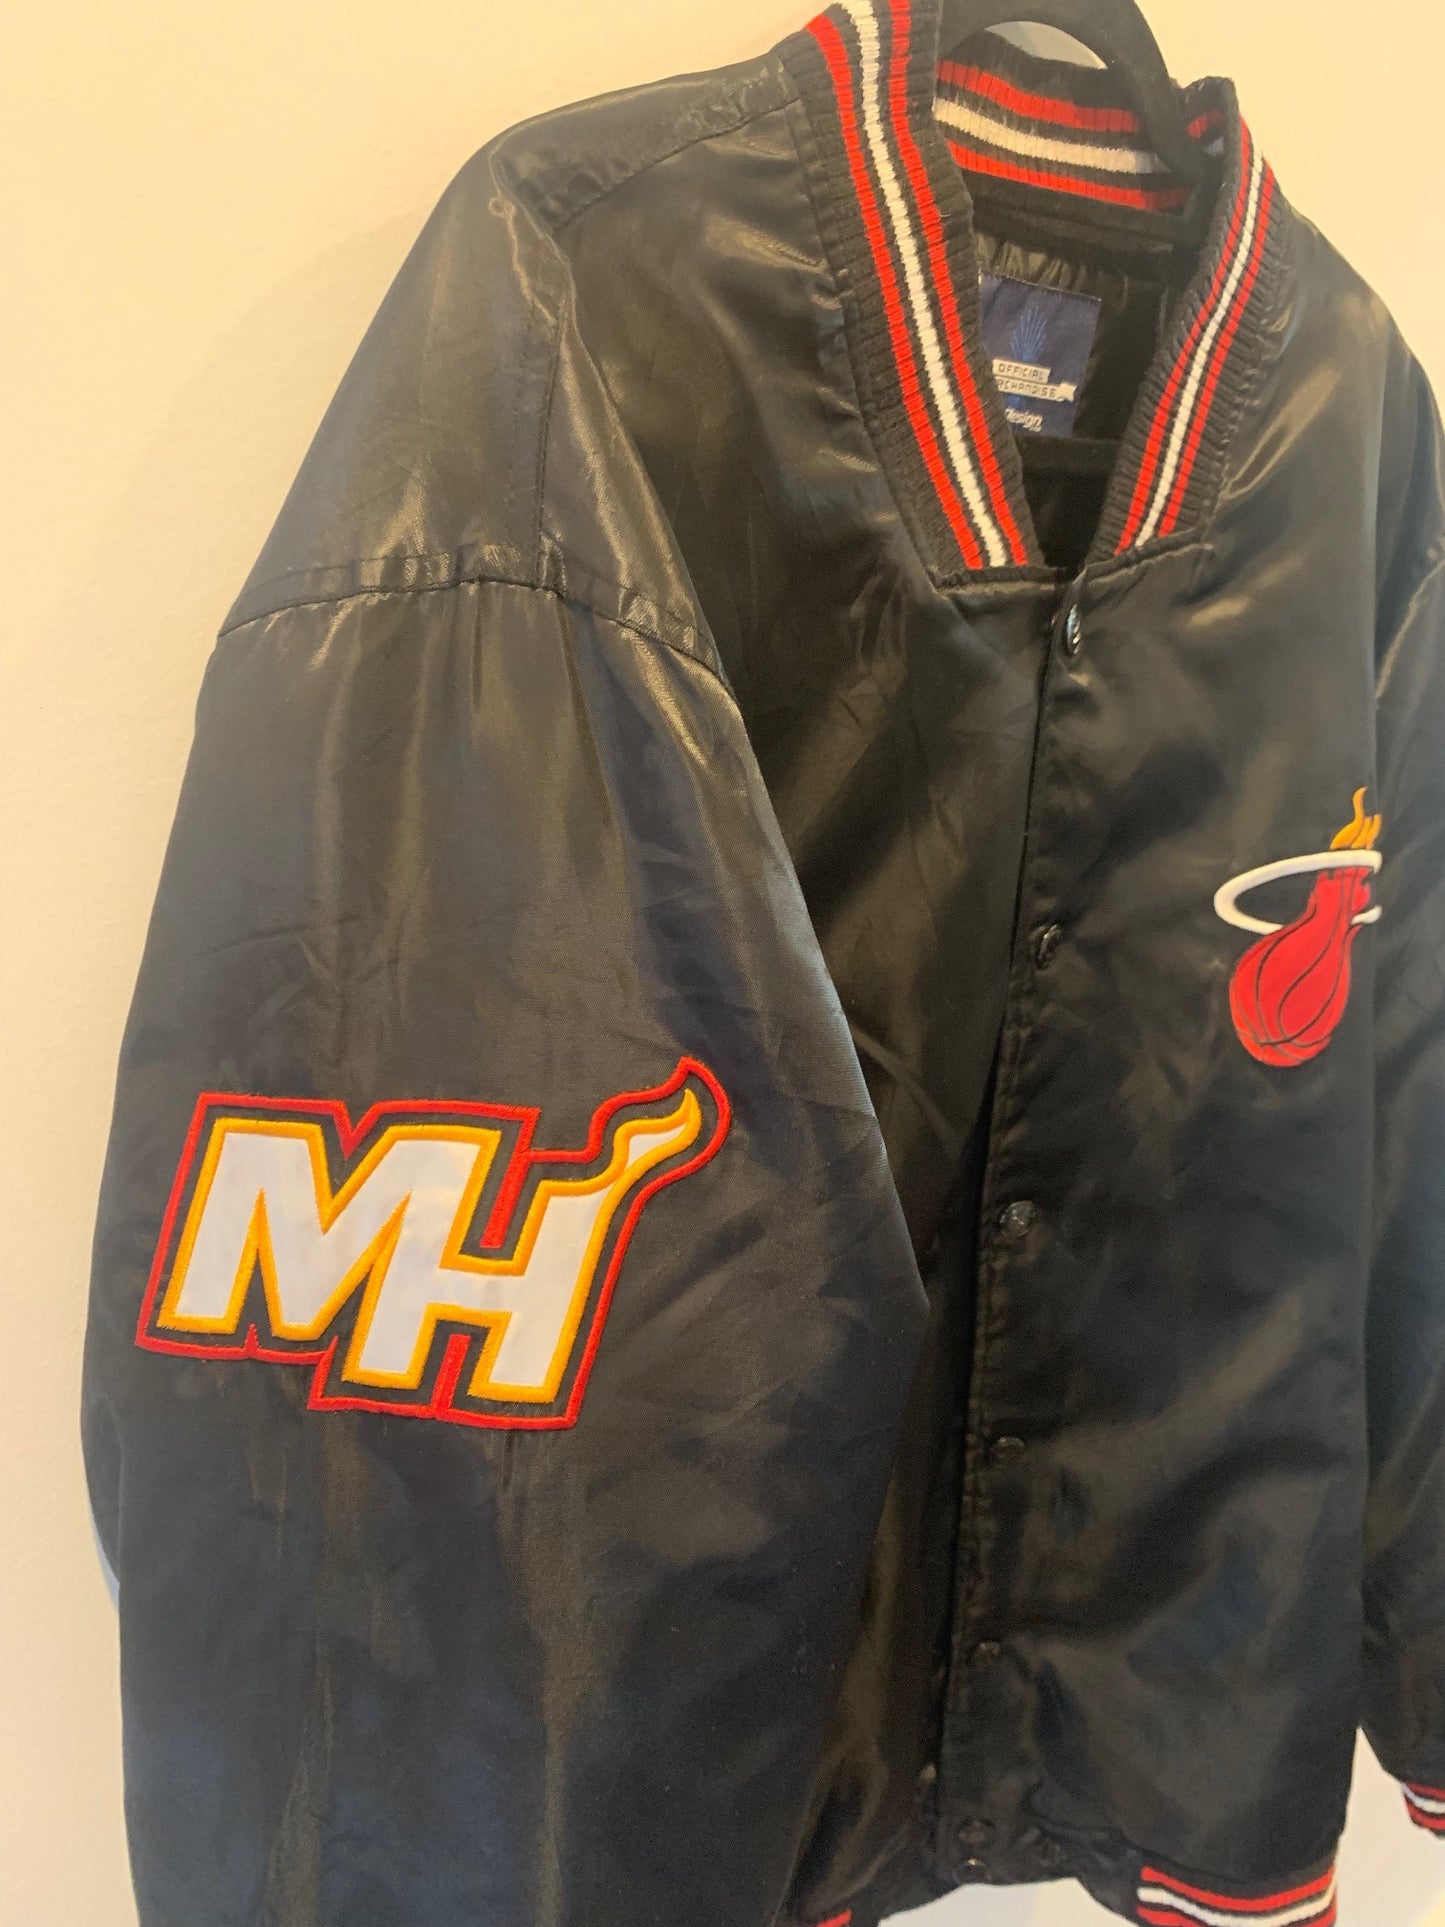 NBA Miami Heat Bomber Jacket